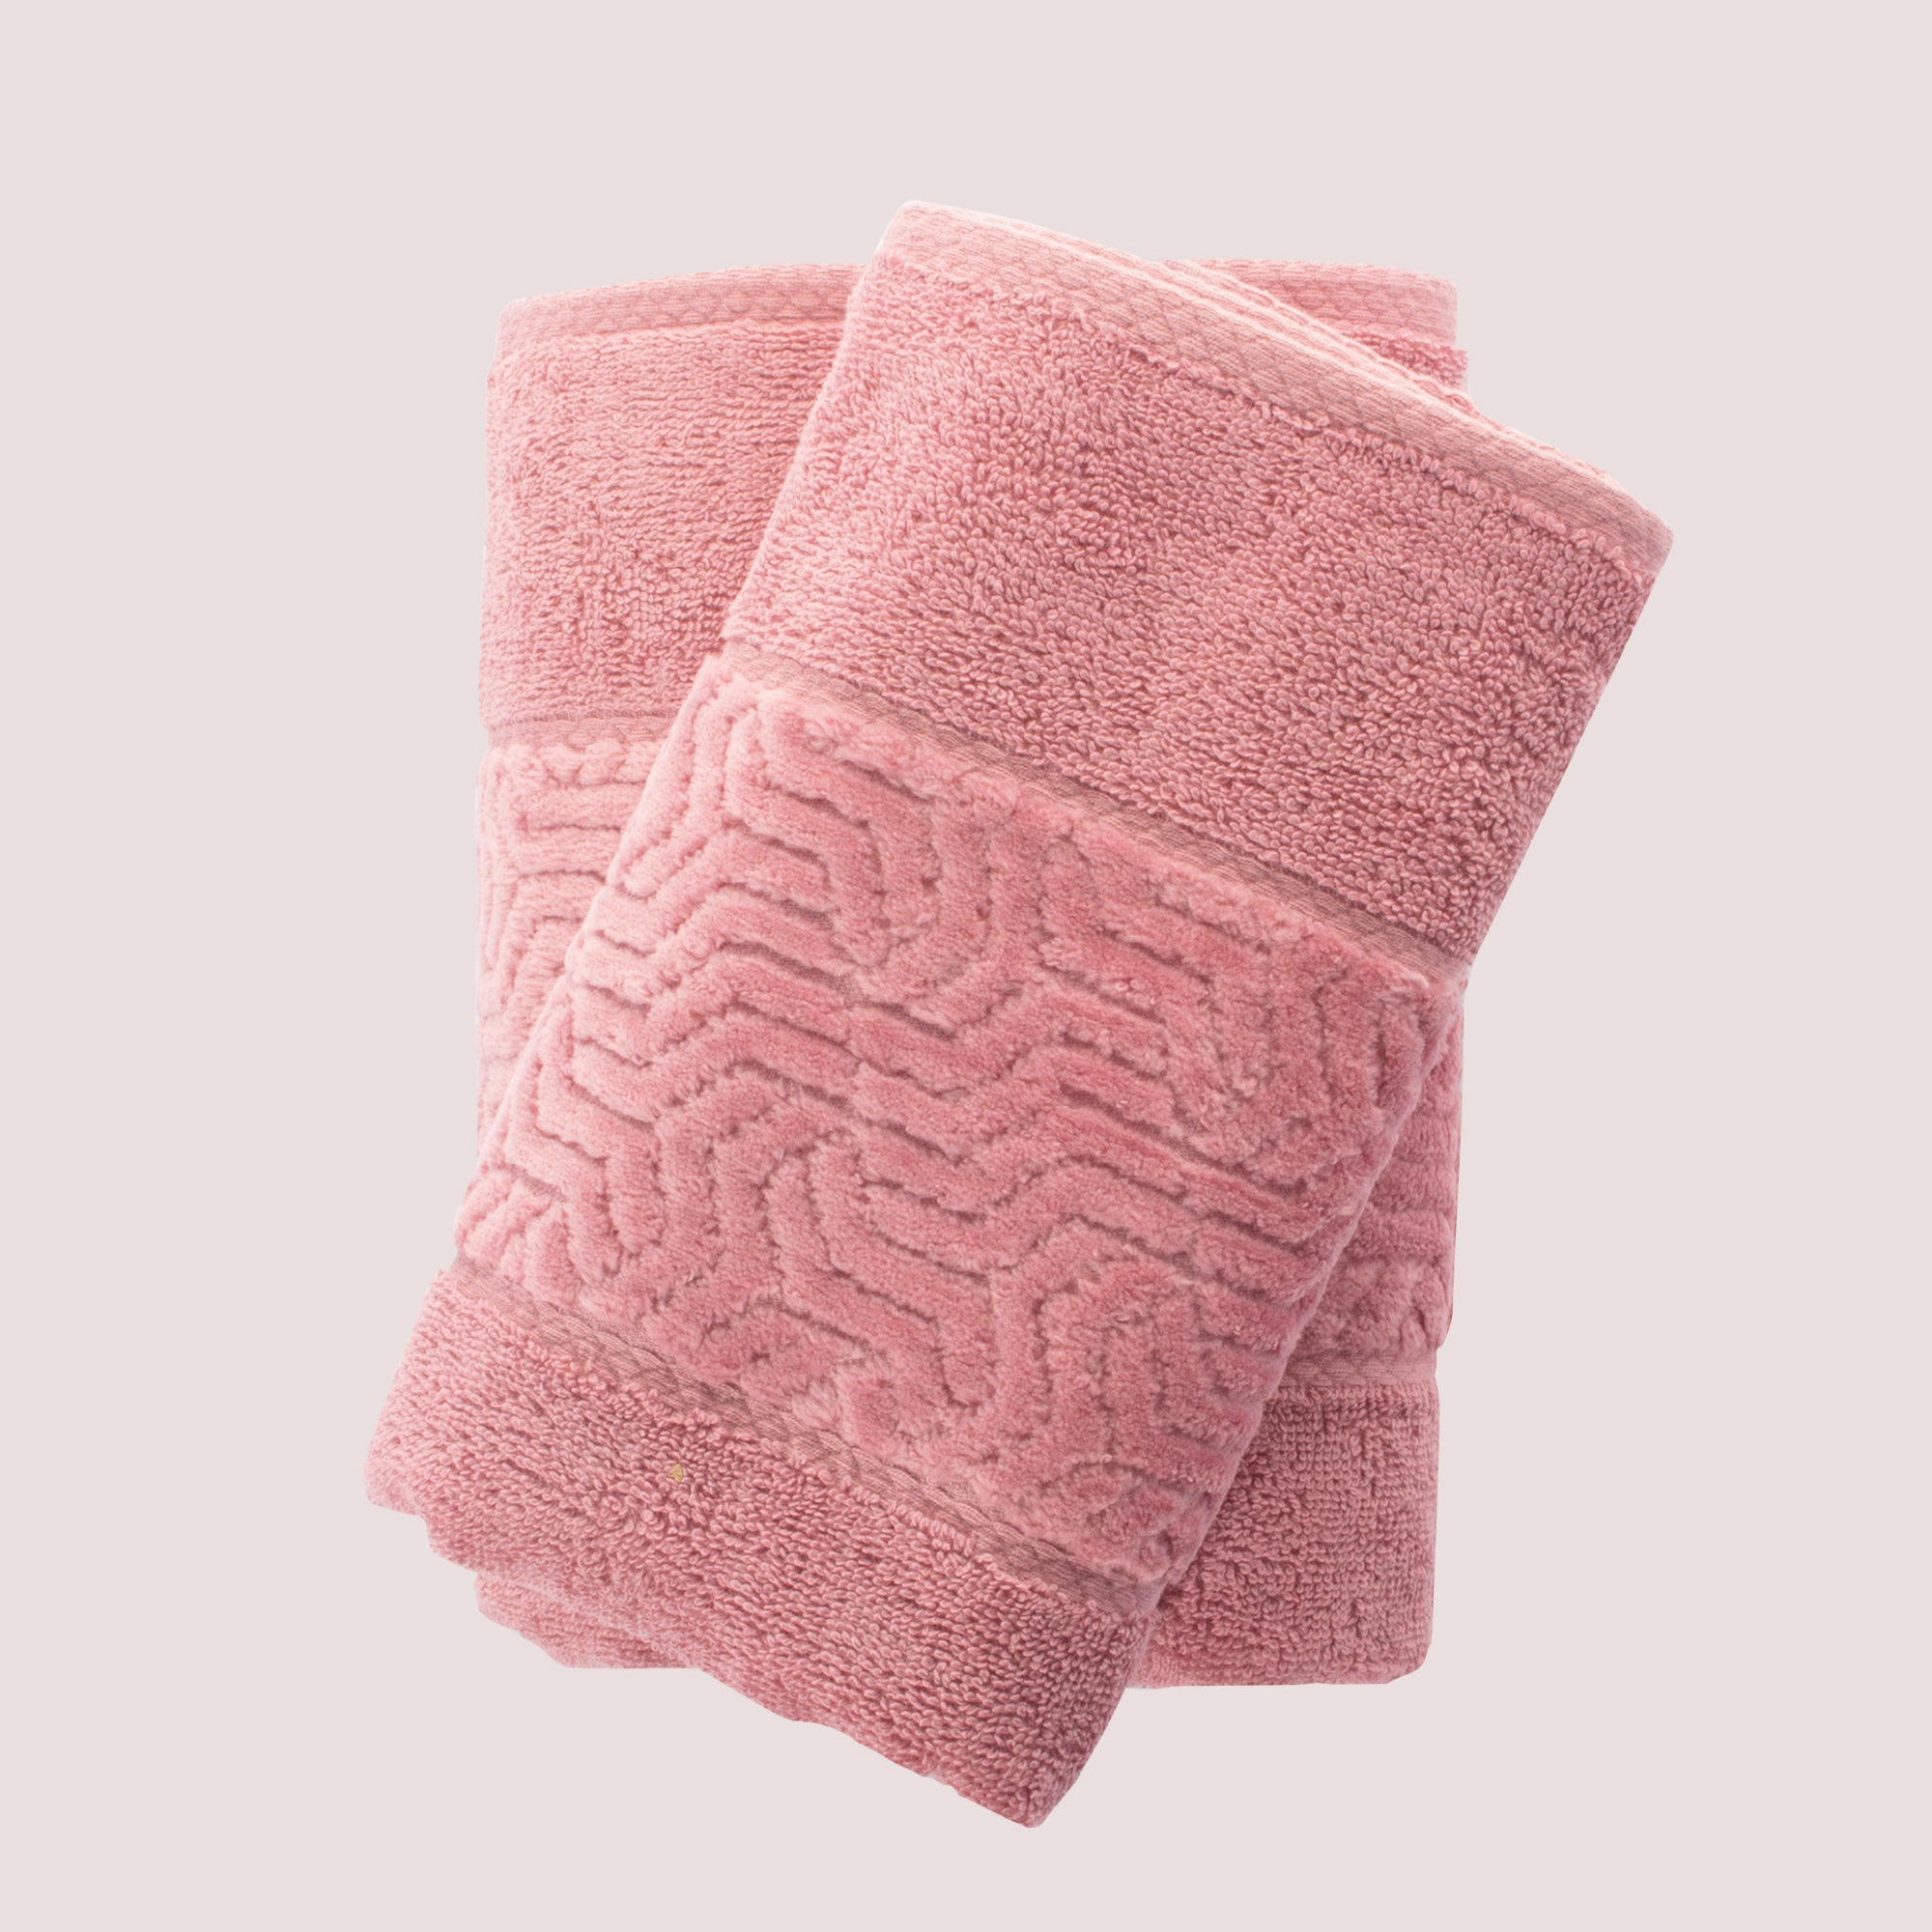 Toalla de baño Safira 100% algodón 500 gramos rosa